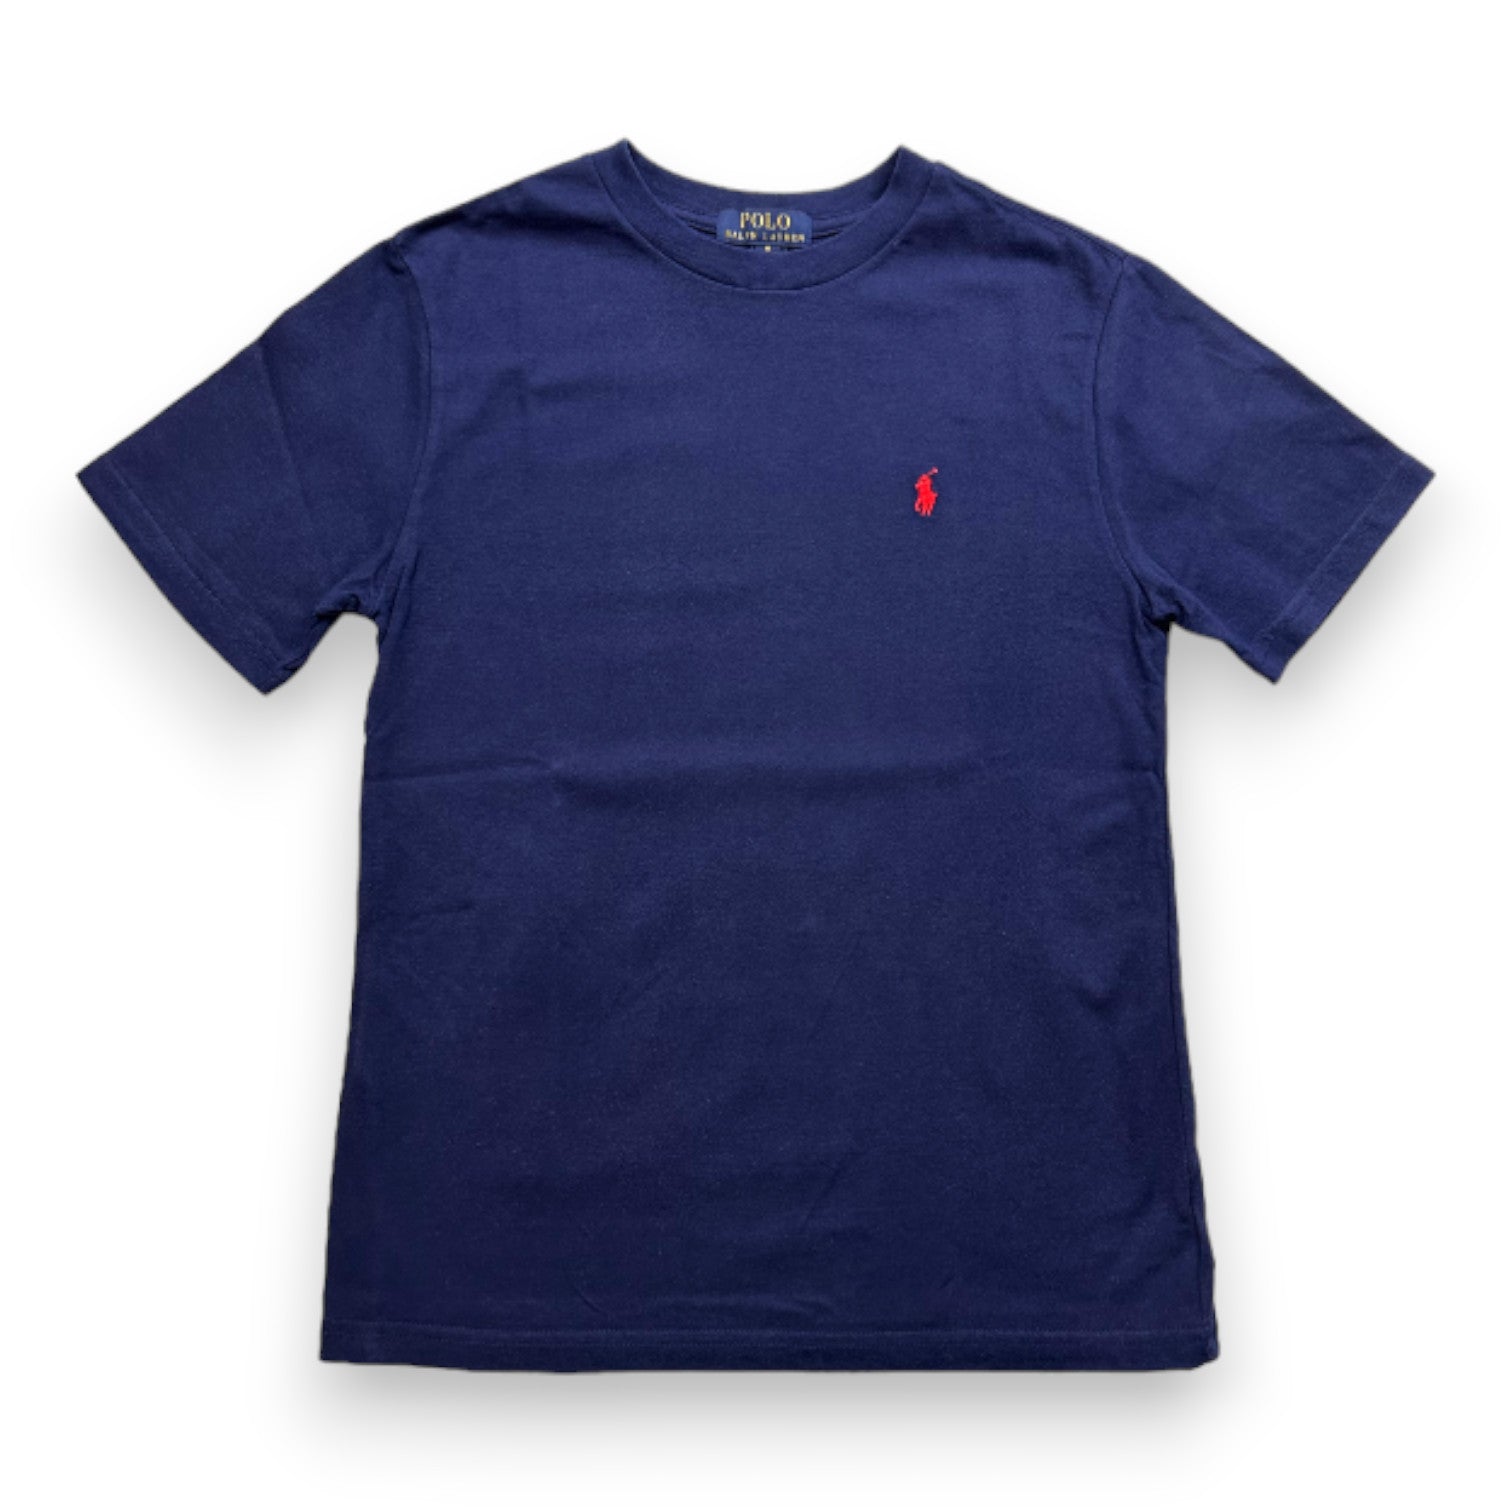 RALPH LAUREN - T-shirt bleu marine à manches courtes - 10 ans